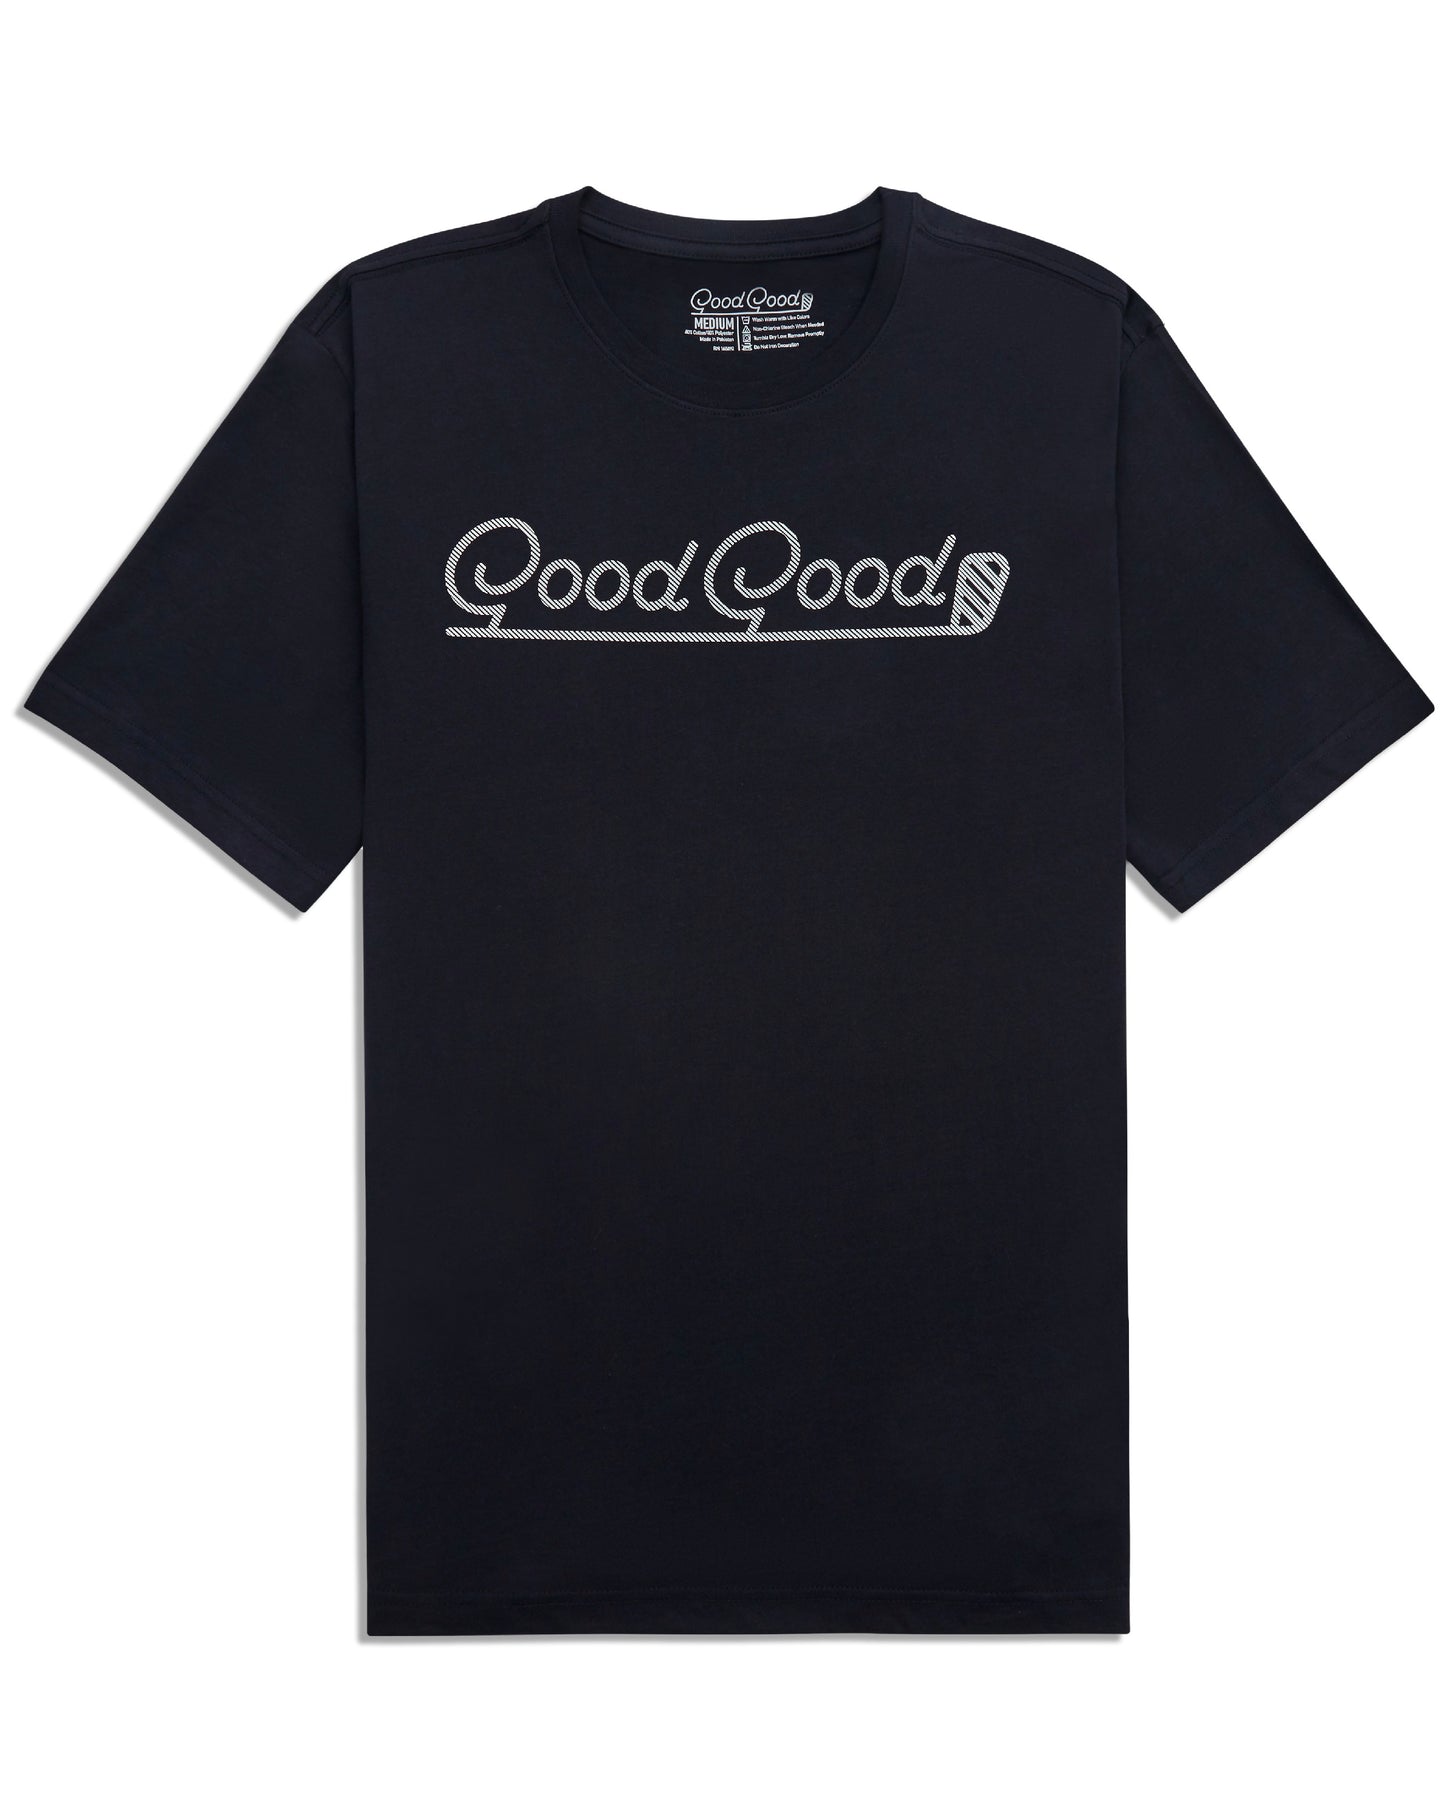 The Good Good T-Shirt - Ultra Soft T-Shirt From Good Good Golf